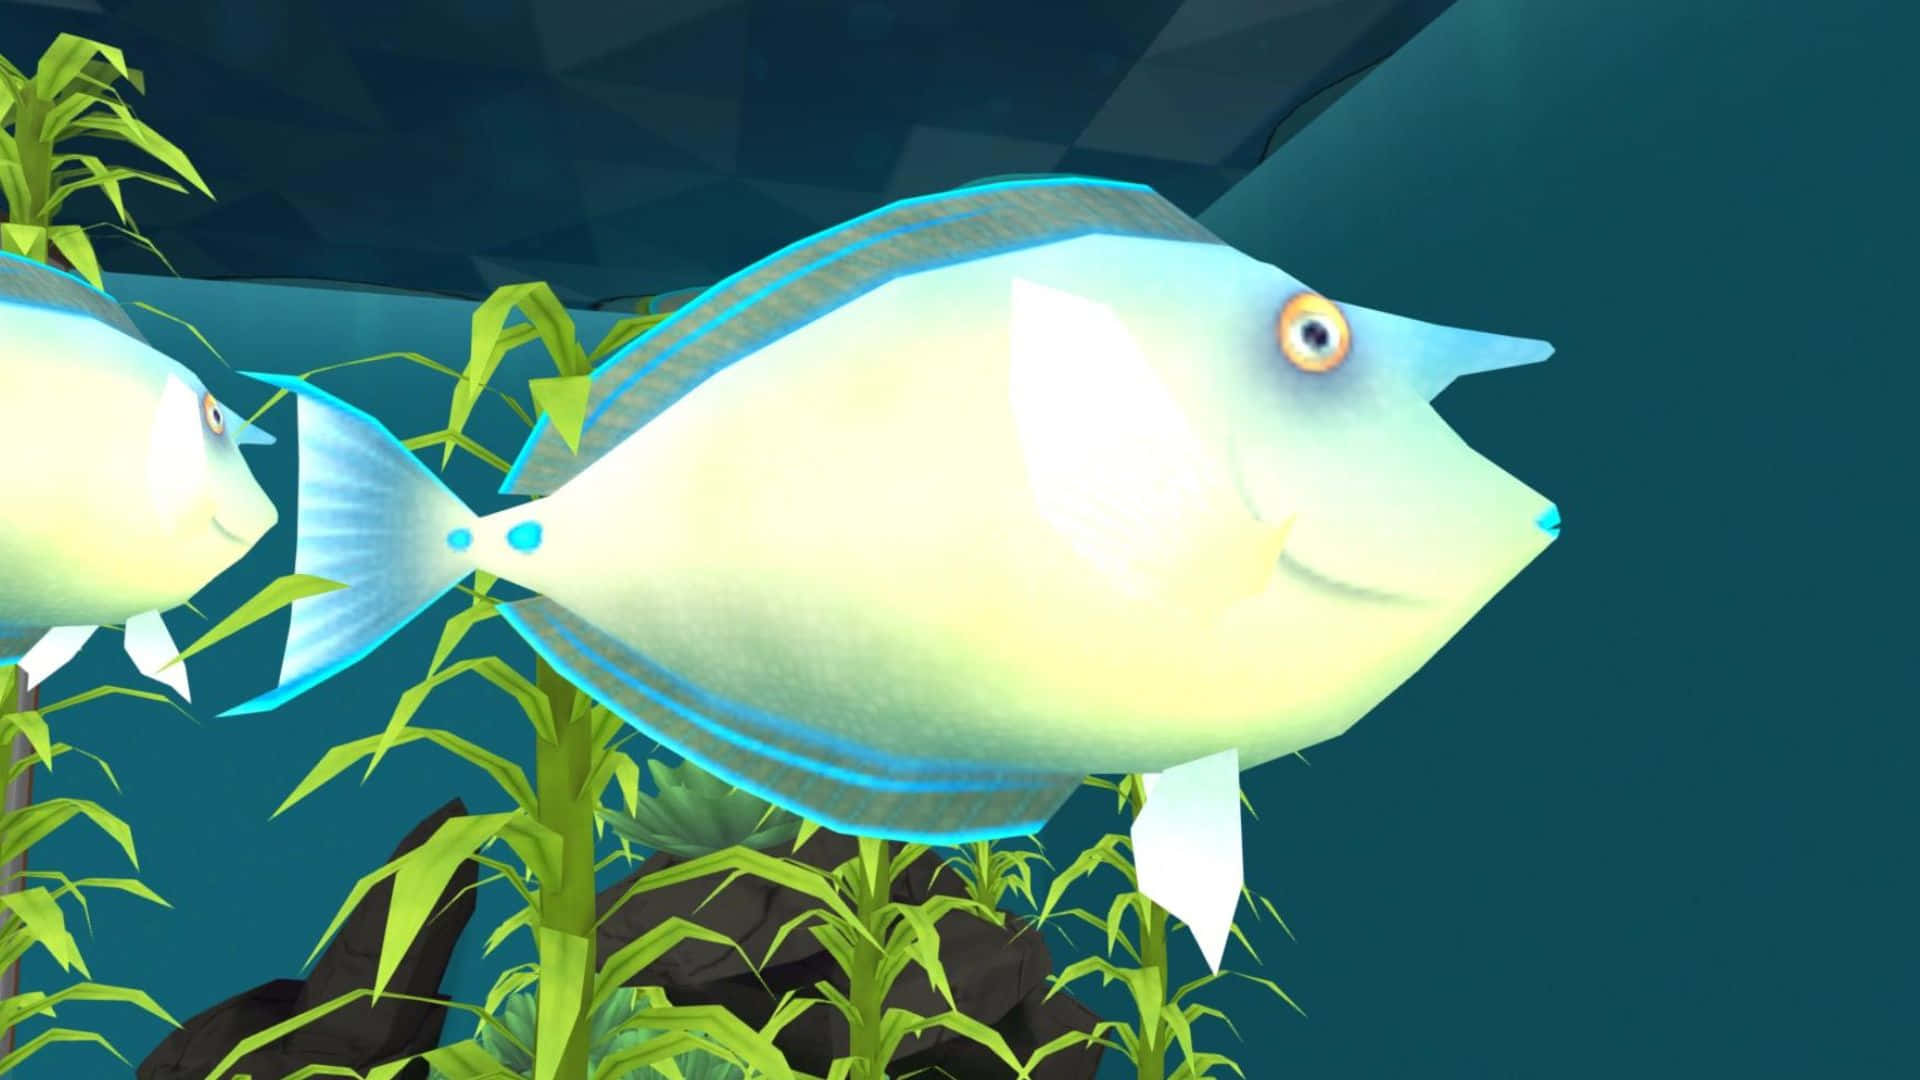 Animated Surgeonfish Underwater Scene Wallpaper